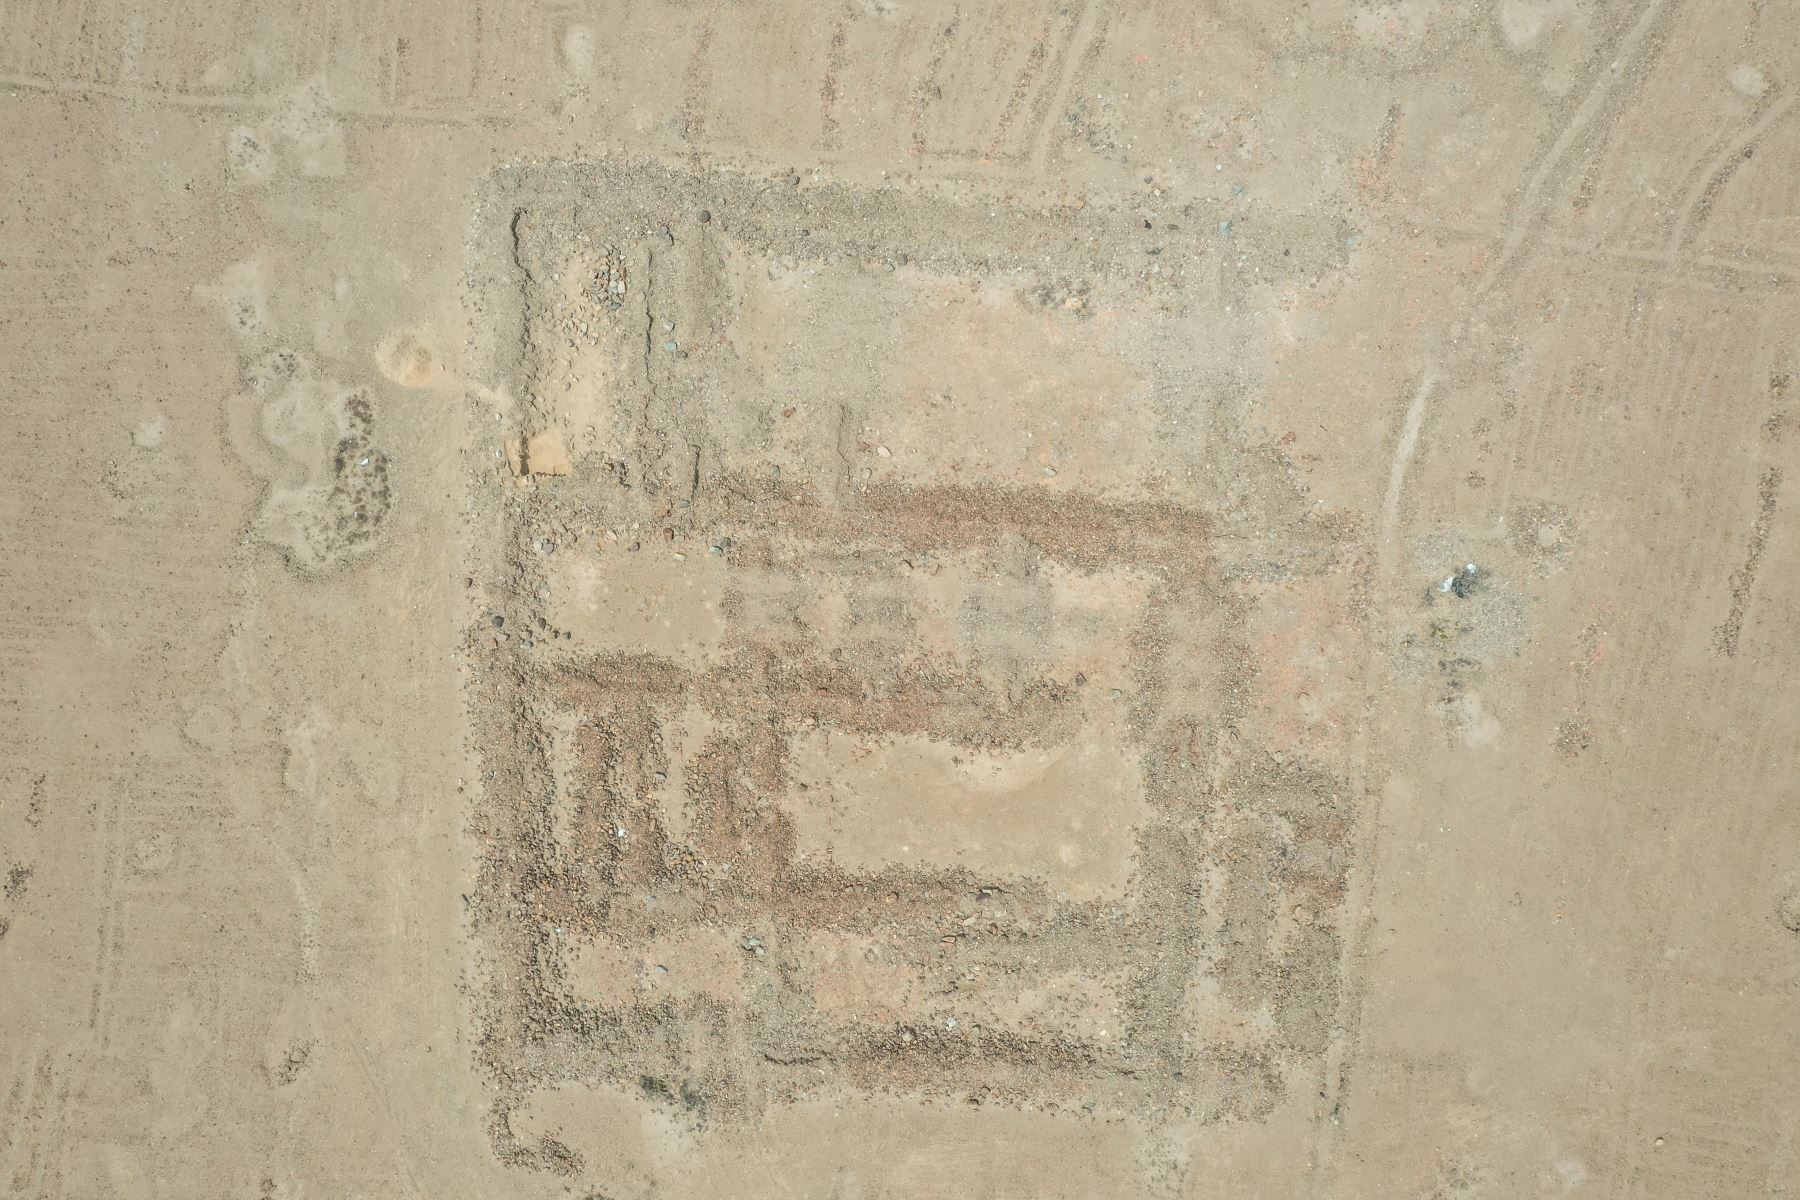 El sitio arqueológico fue descubierto en la quebrada El Oso, en el marco del Programa Arqueológico Chicama y demostraría la orientación agrícola de la cultura Chimú. Foto: Programa Arqueológico Chicama - UNMSM - IPEA. Foto: Programa Arqueológico Chicama - UNMSM - IPEA